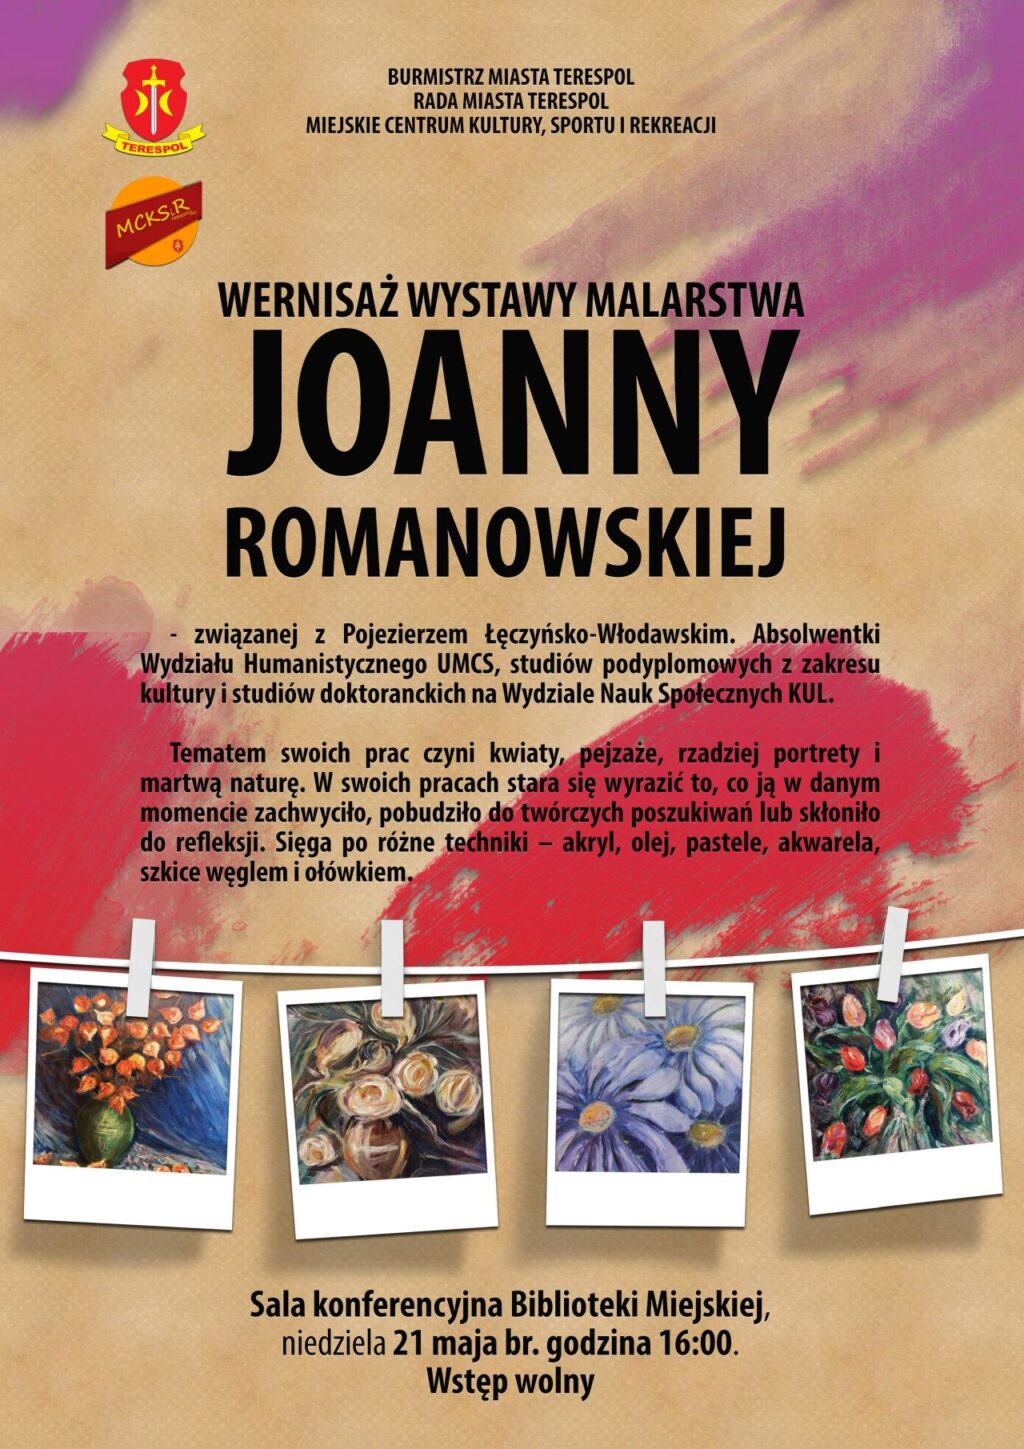 Zapraszają na wernisaż wystawy malarstwa Joanny Romanowskiej